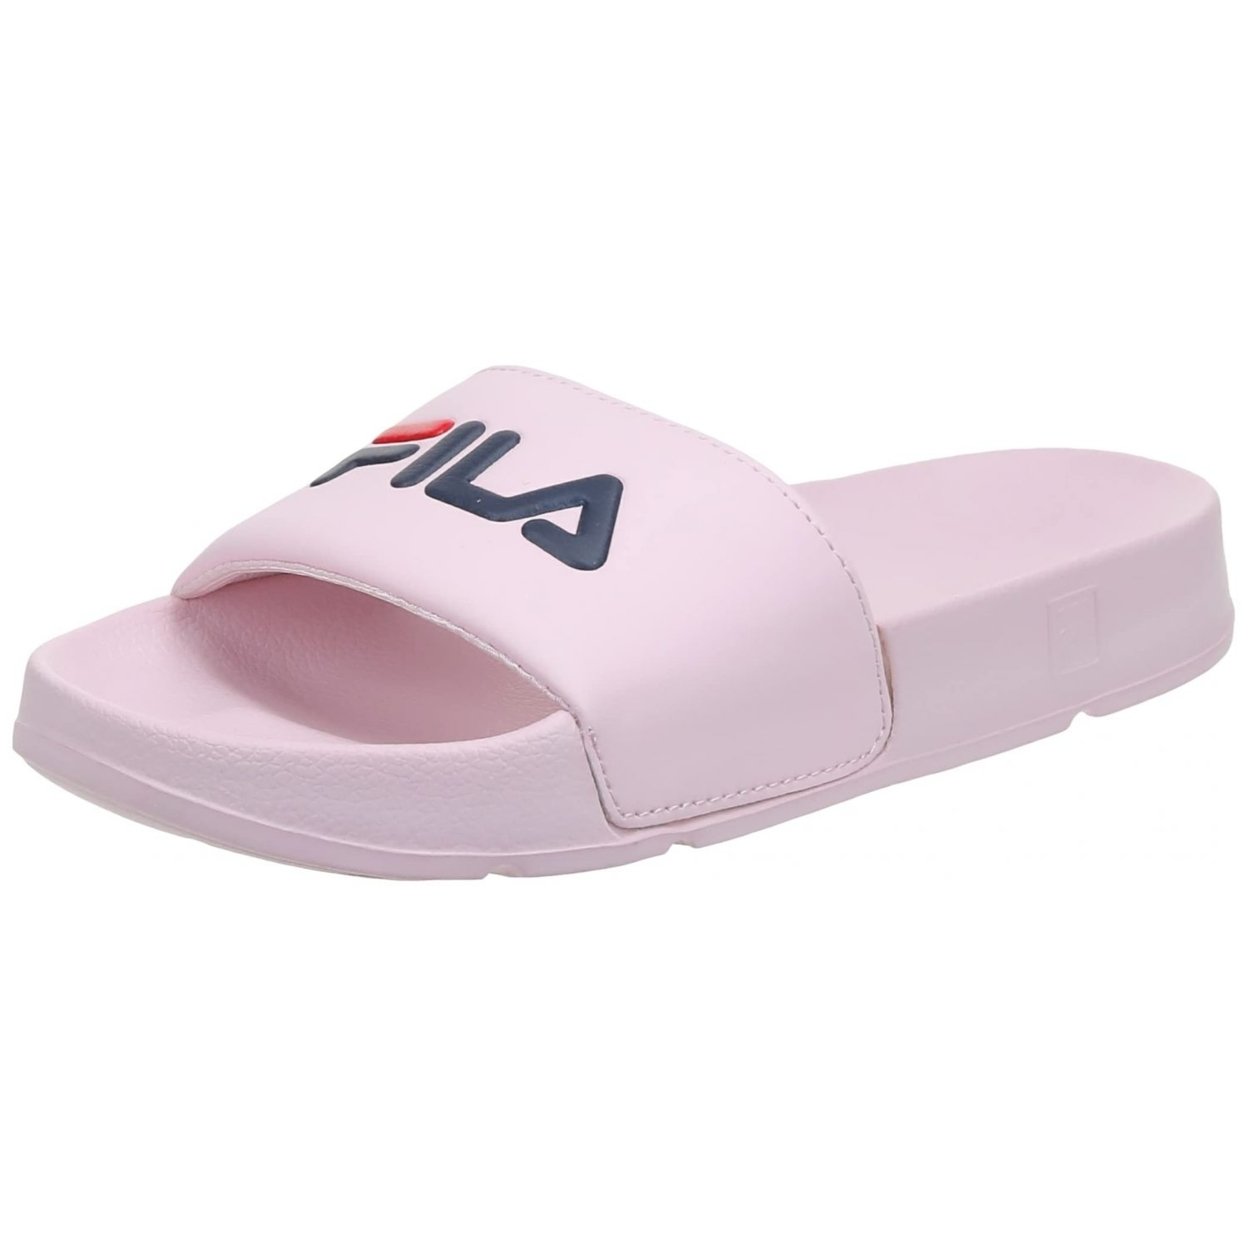 Fila Women's Drifter Slide Sandal 9 D(M) US BBRD/FNVY/FRED - BBRD/FNVY/FRED, 9